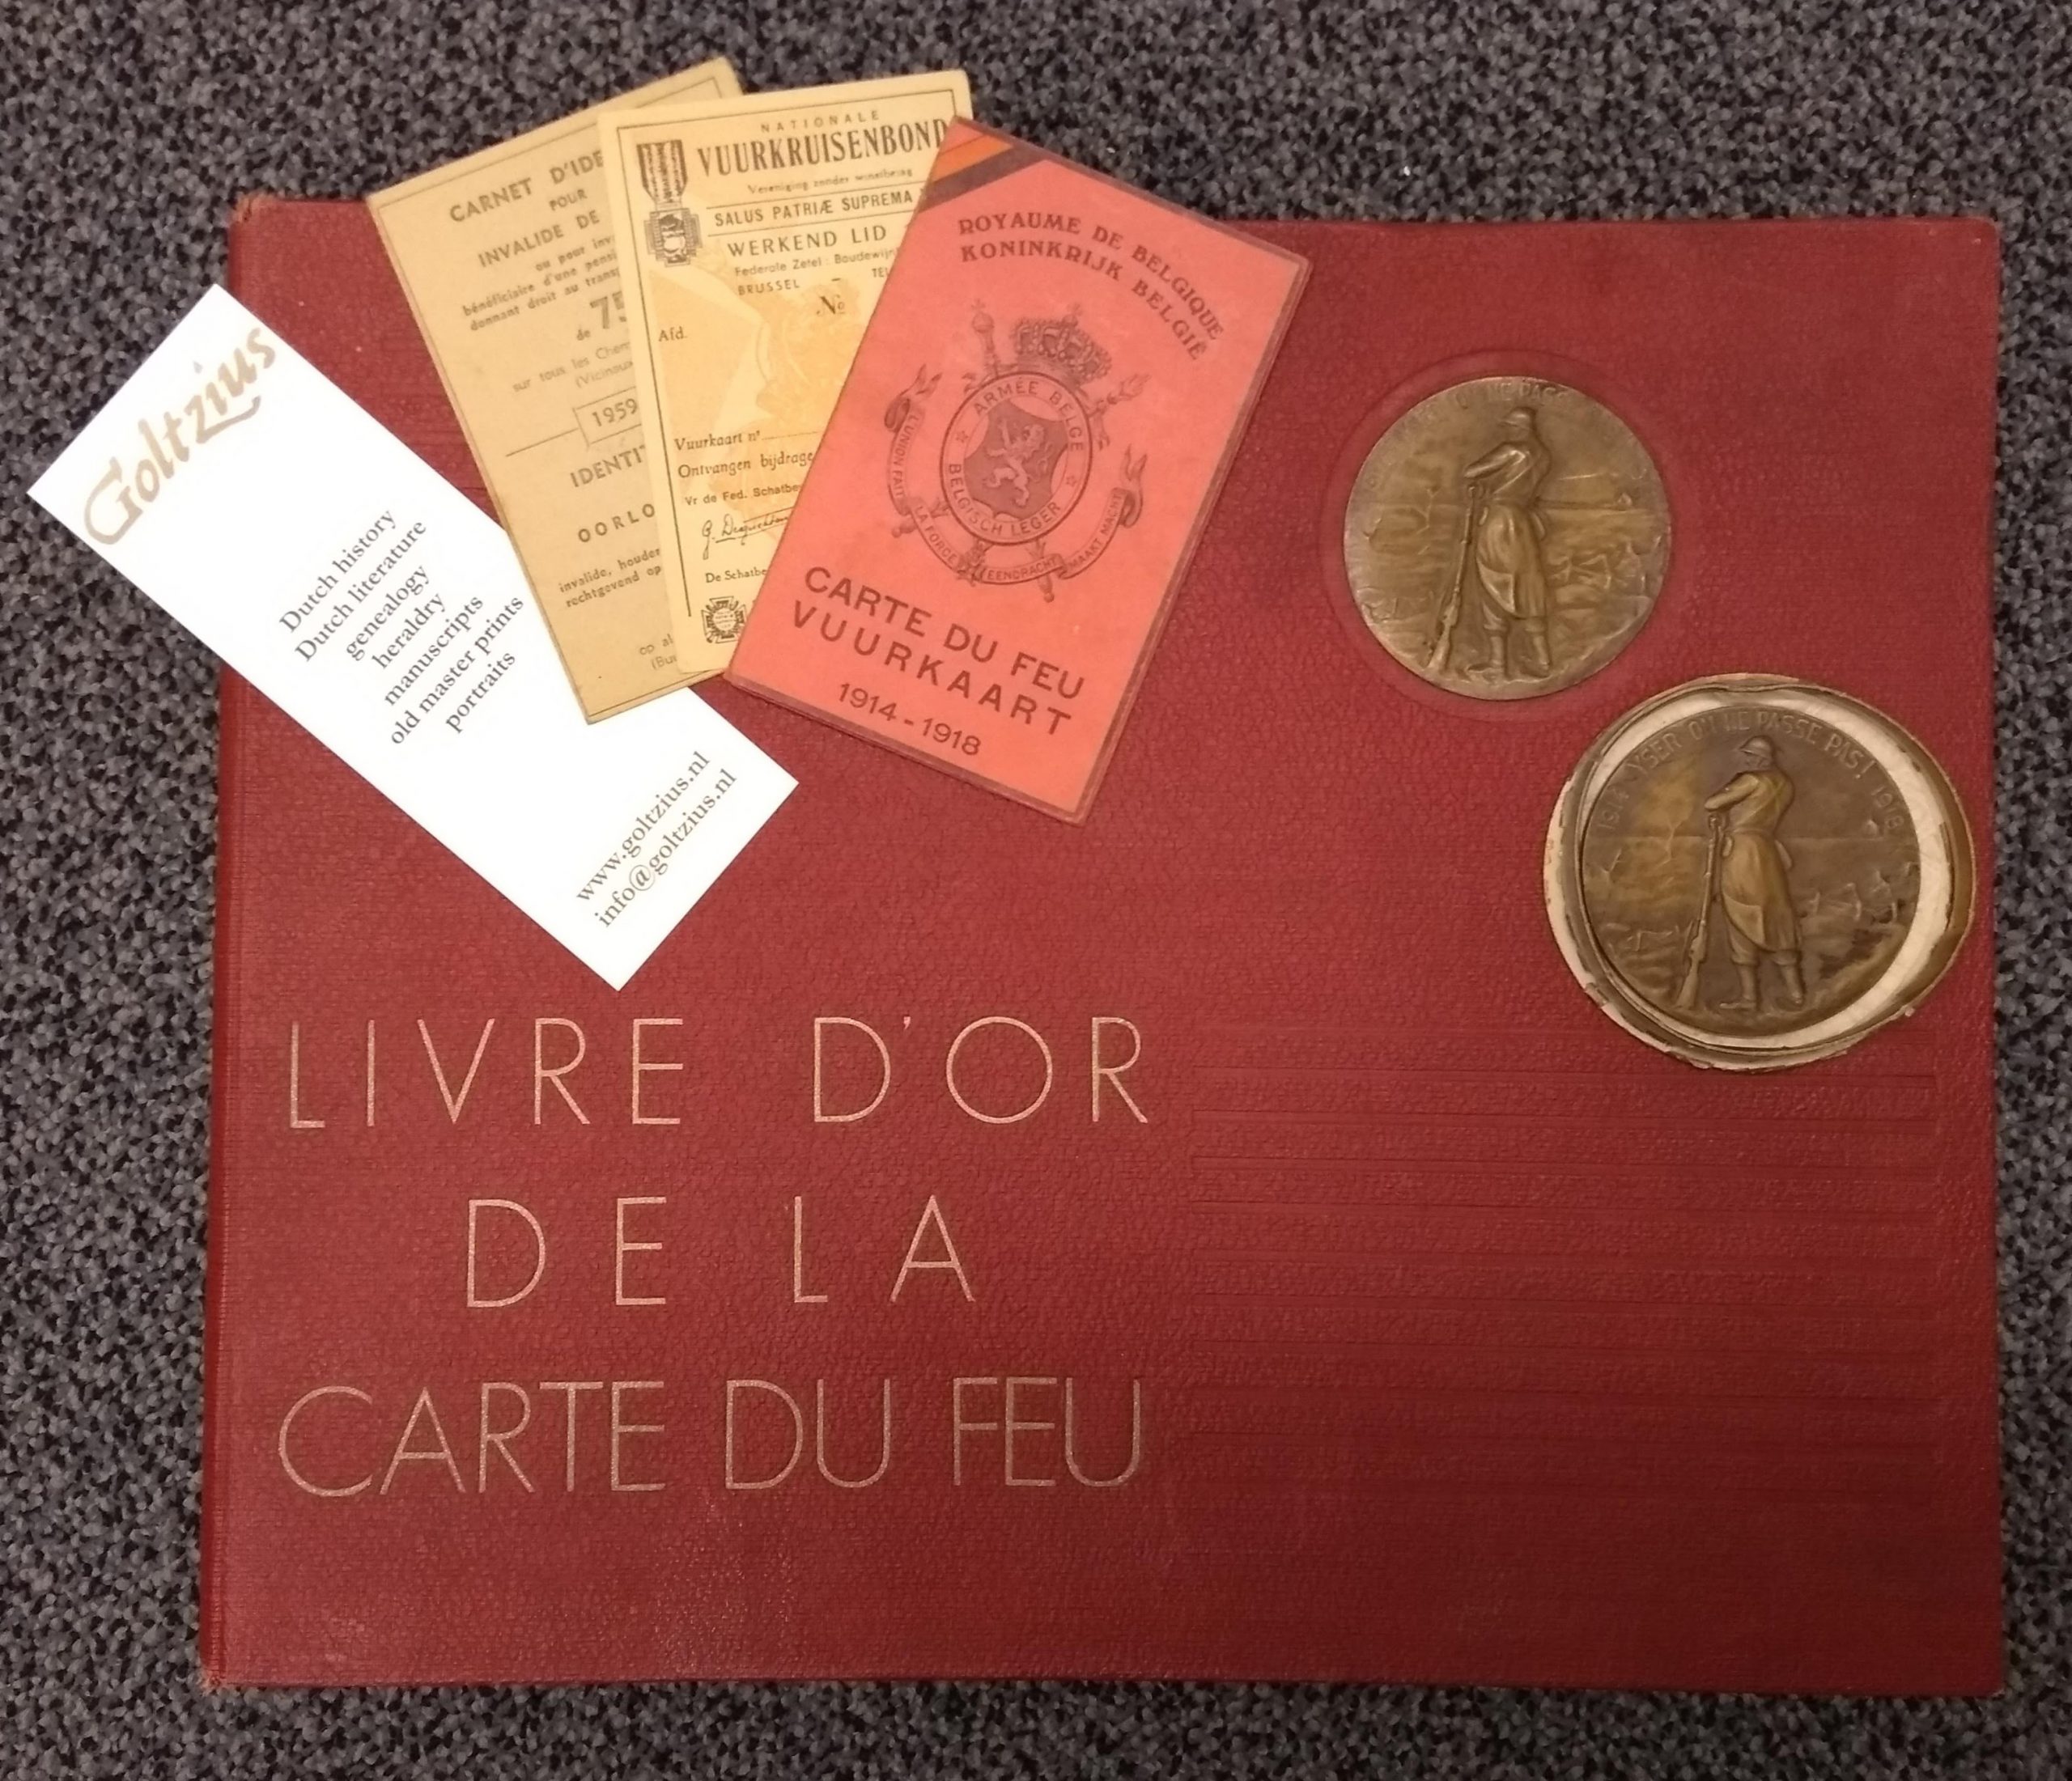 Livre d'or de la Carte de Feu of Marcel H.G. Grenier